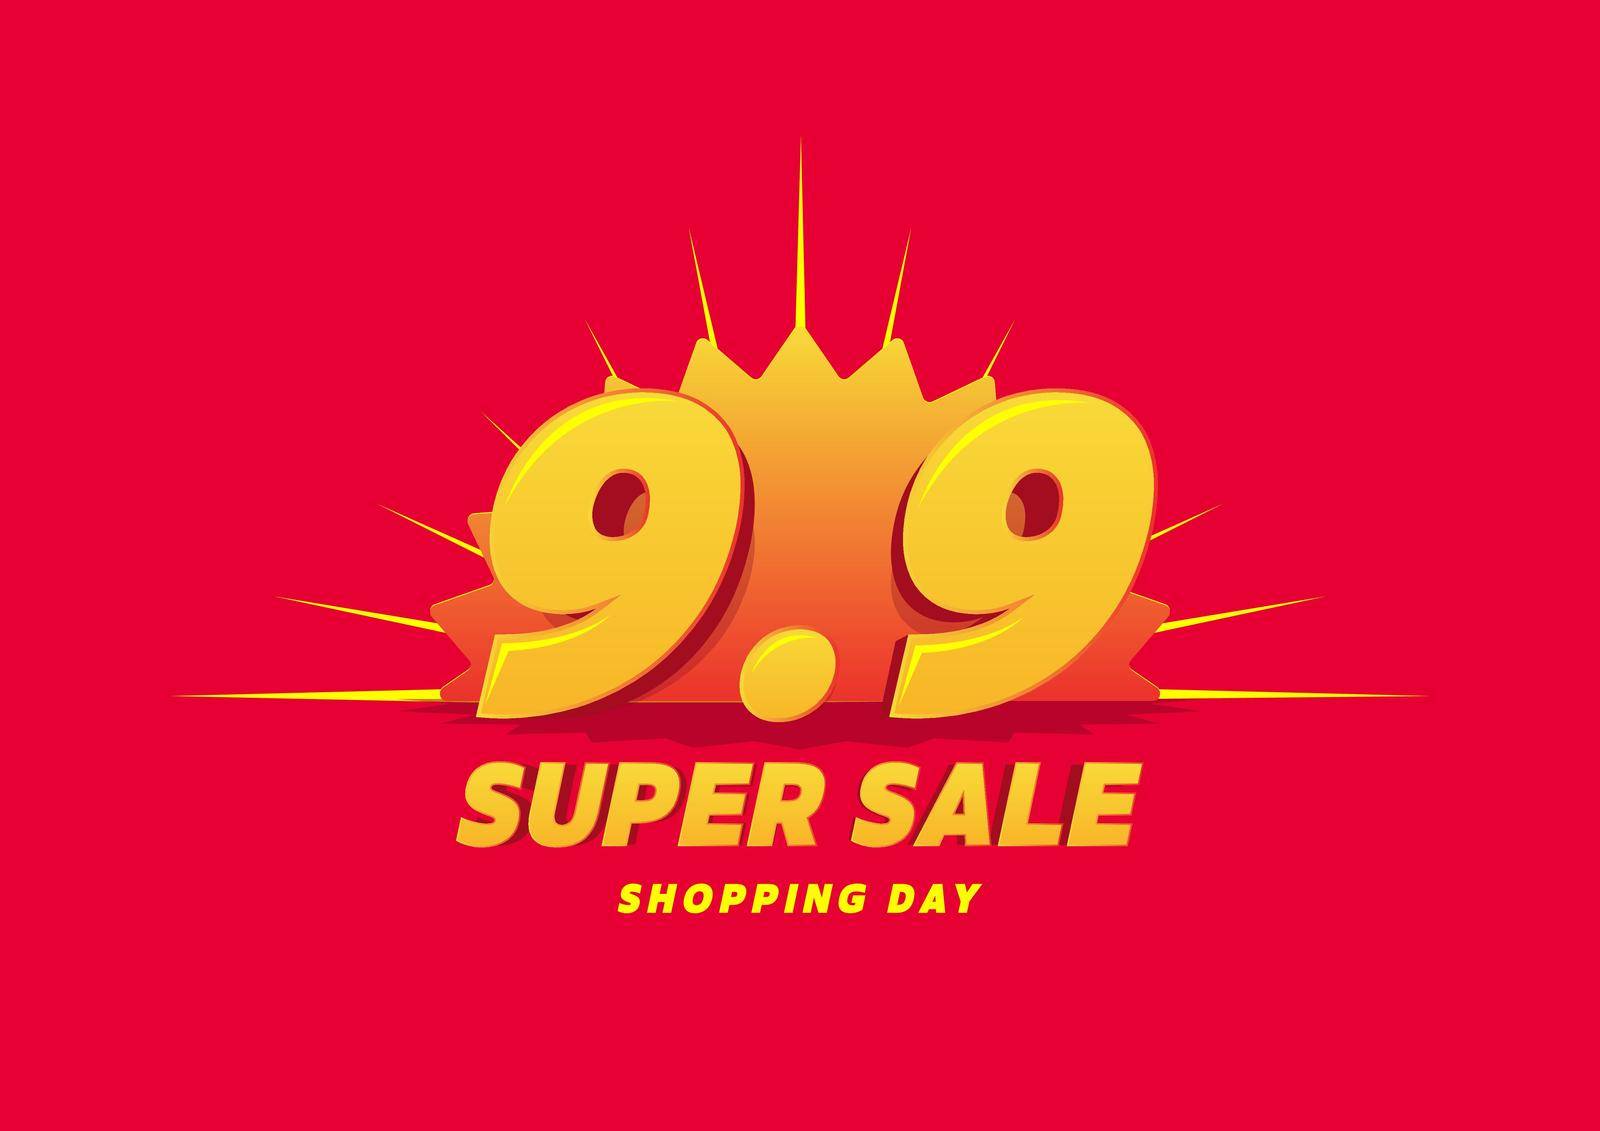 9.9 Shopping day sale poster or flyer design. 9.9 Super sale online banner.